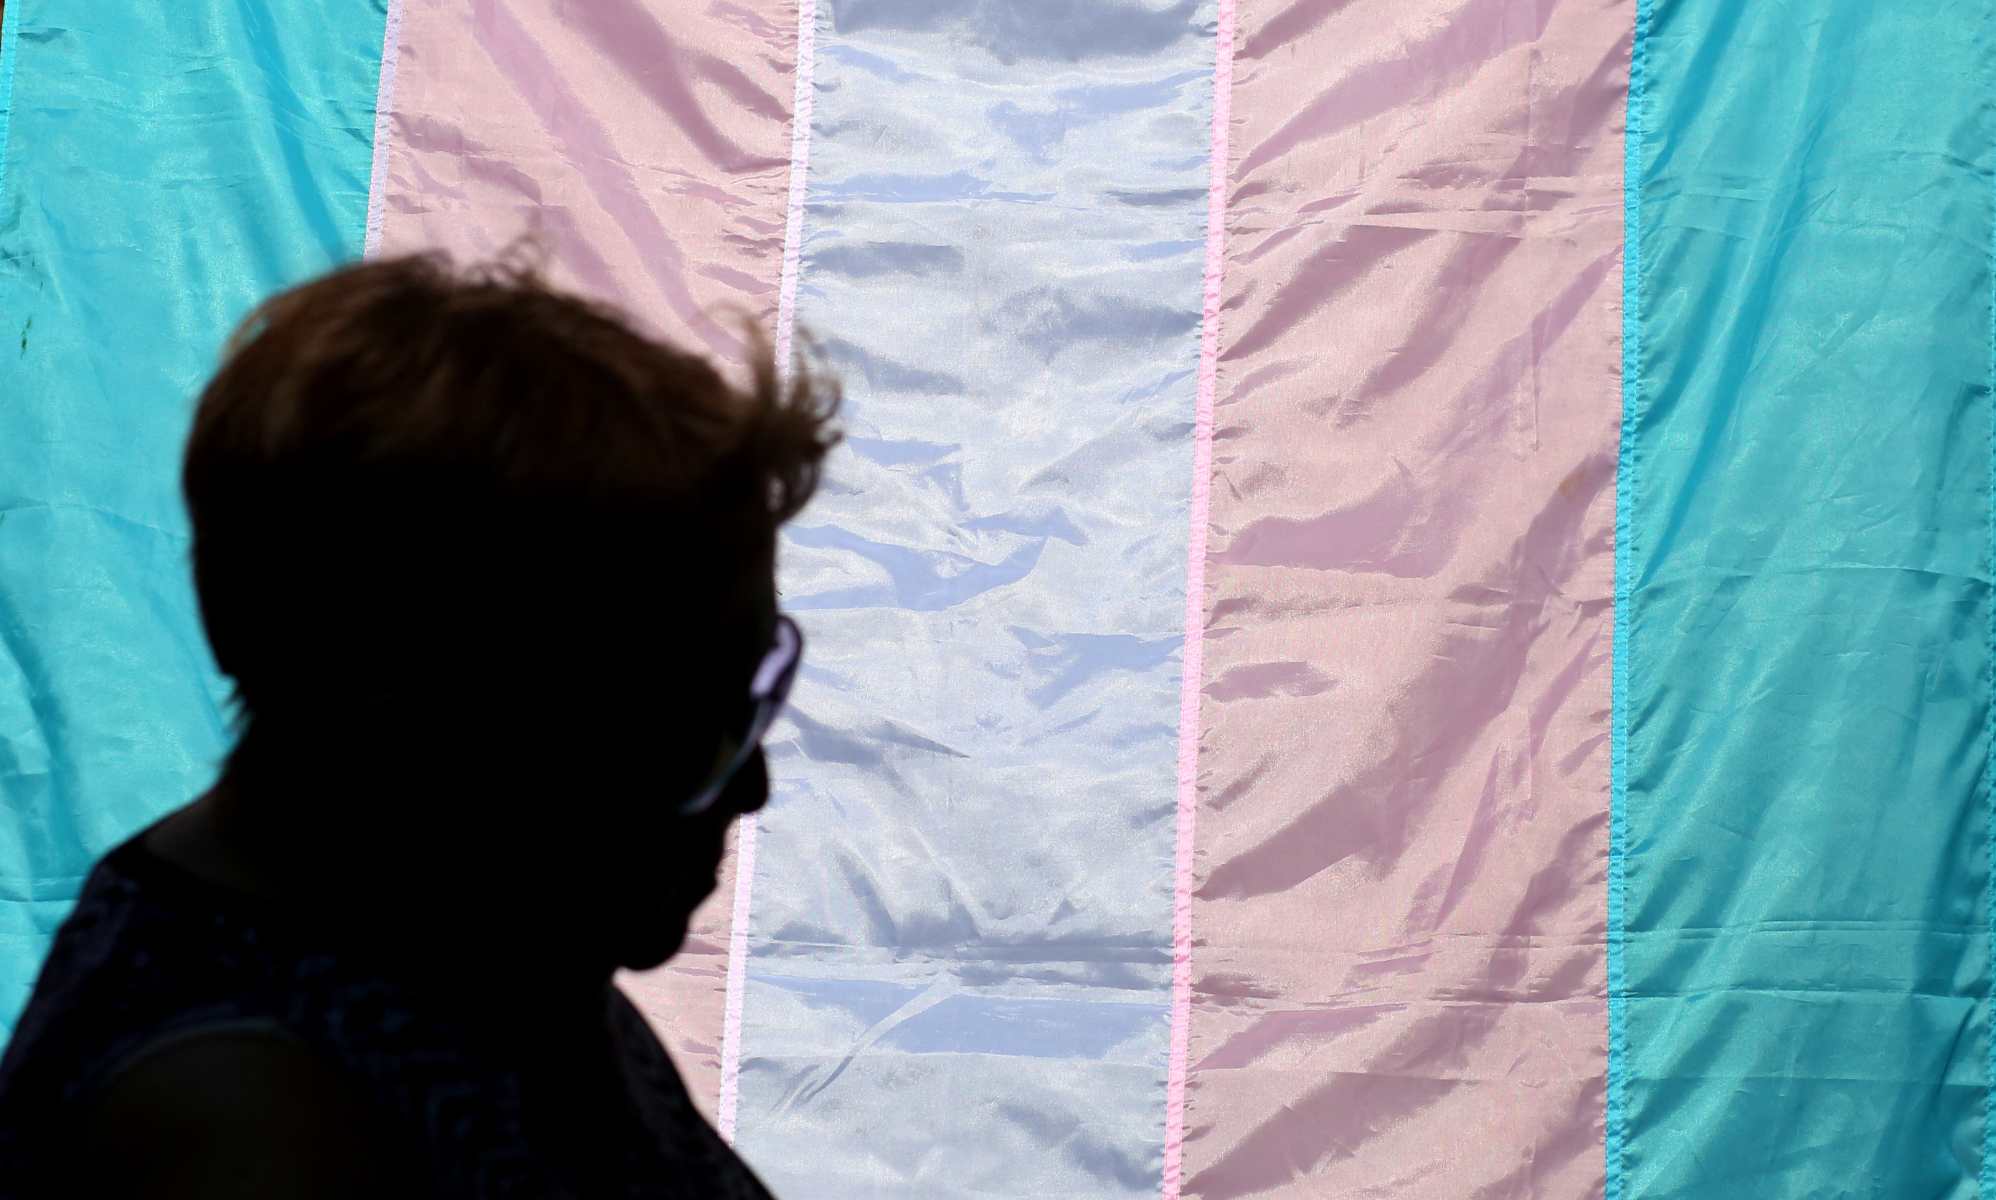 Un tribunal japonés declara "inconstitucional" obligar a esterilizar a las personas transexuales